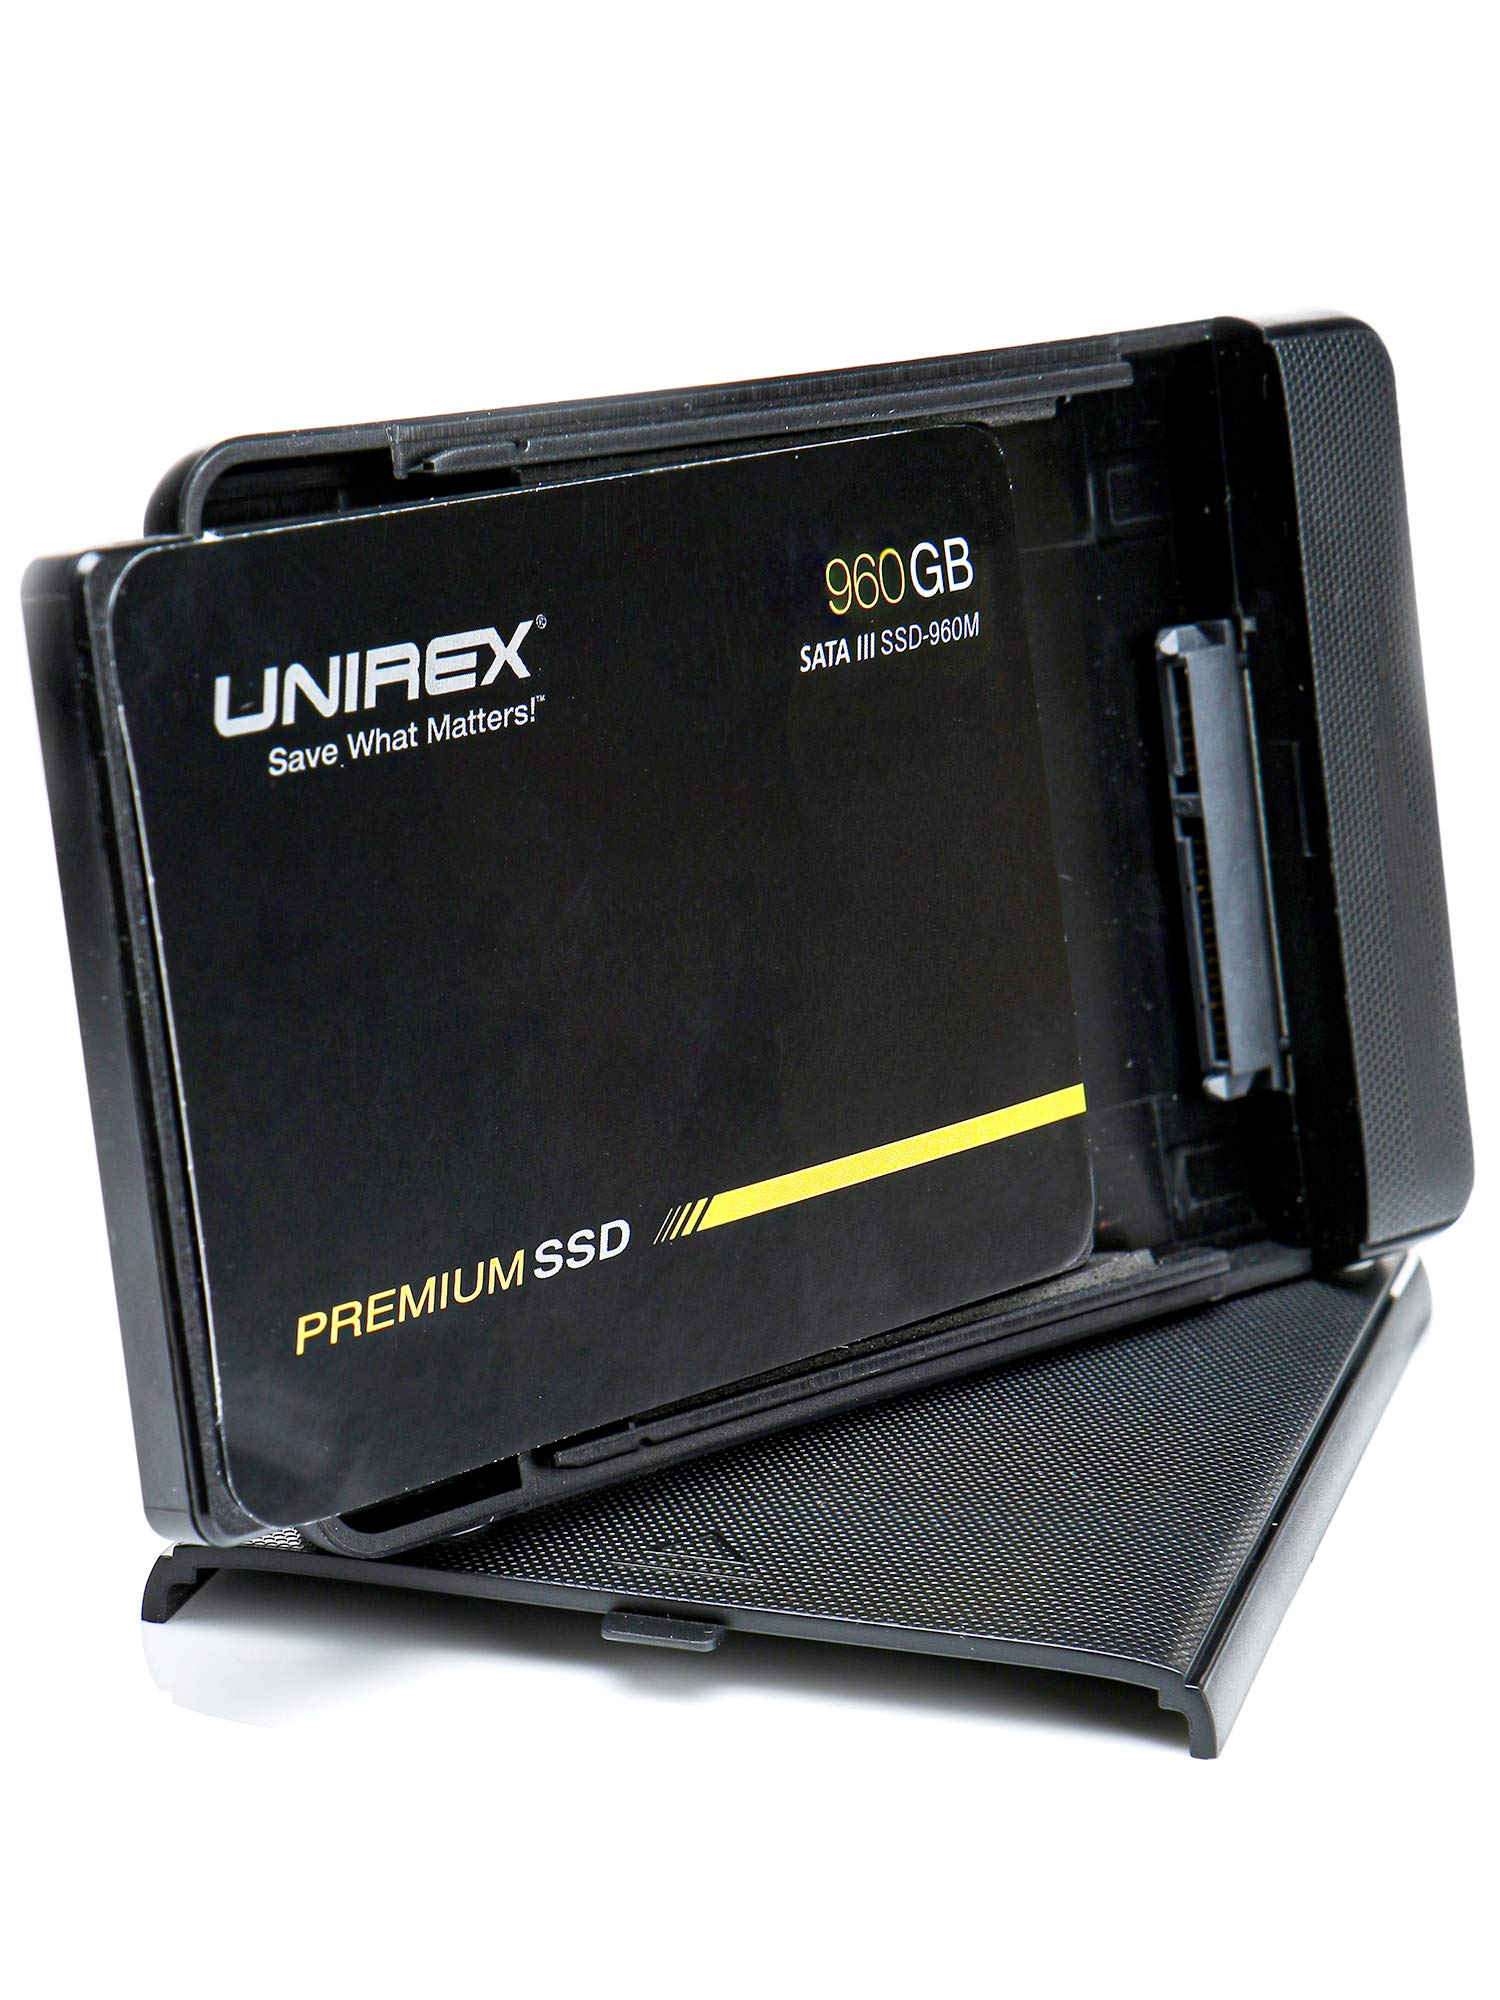 Unirex 960GB Portable External SSD SATA LLL Solid State Drive 3D TLCQLC並行輸入品